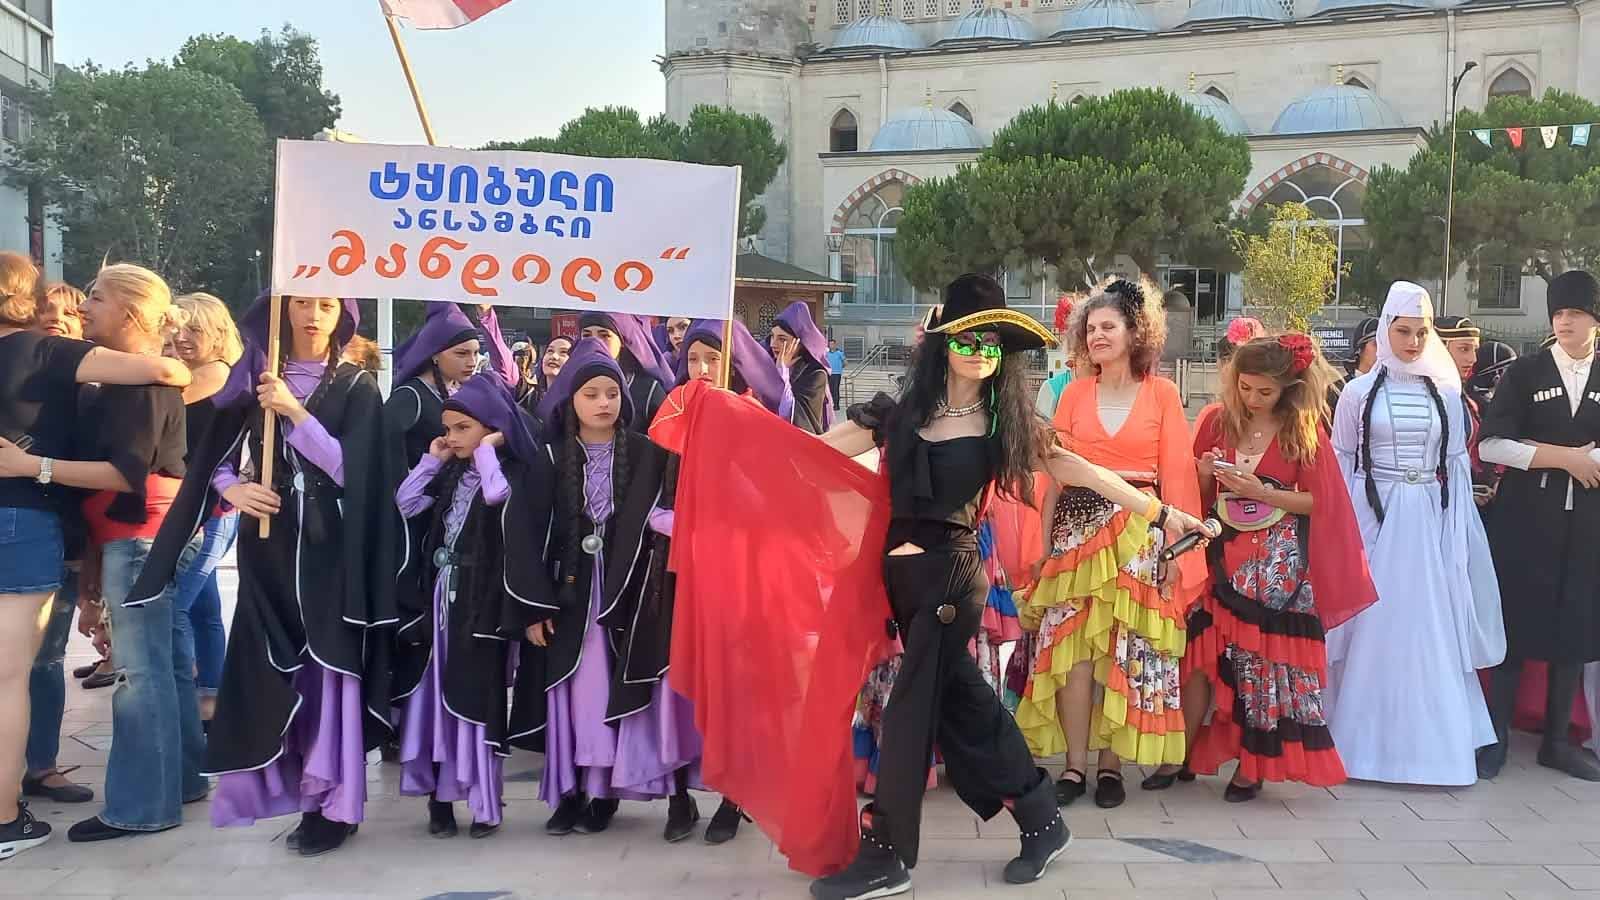 Çiğdem Yorgancıoğlu Mim Chi 360 Euroasia Festival Açılış Dansı